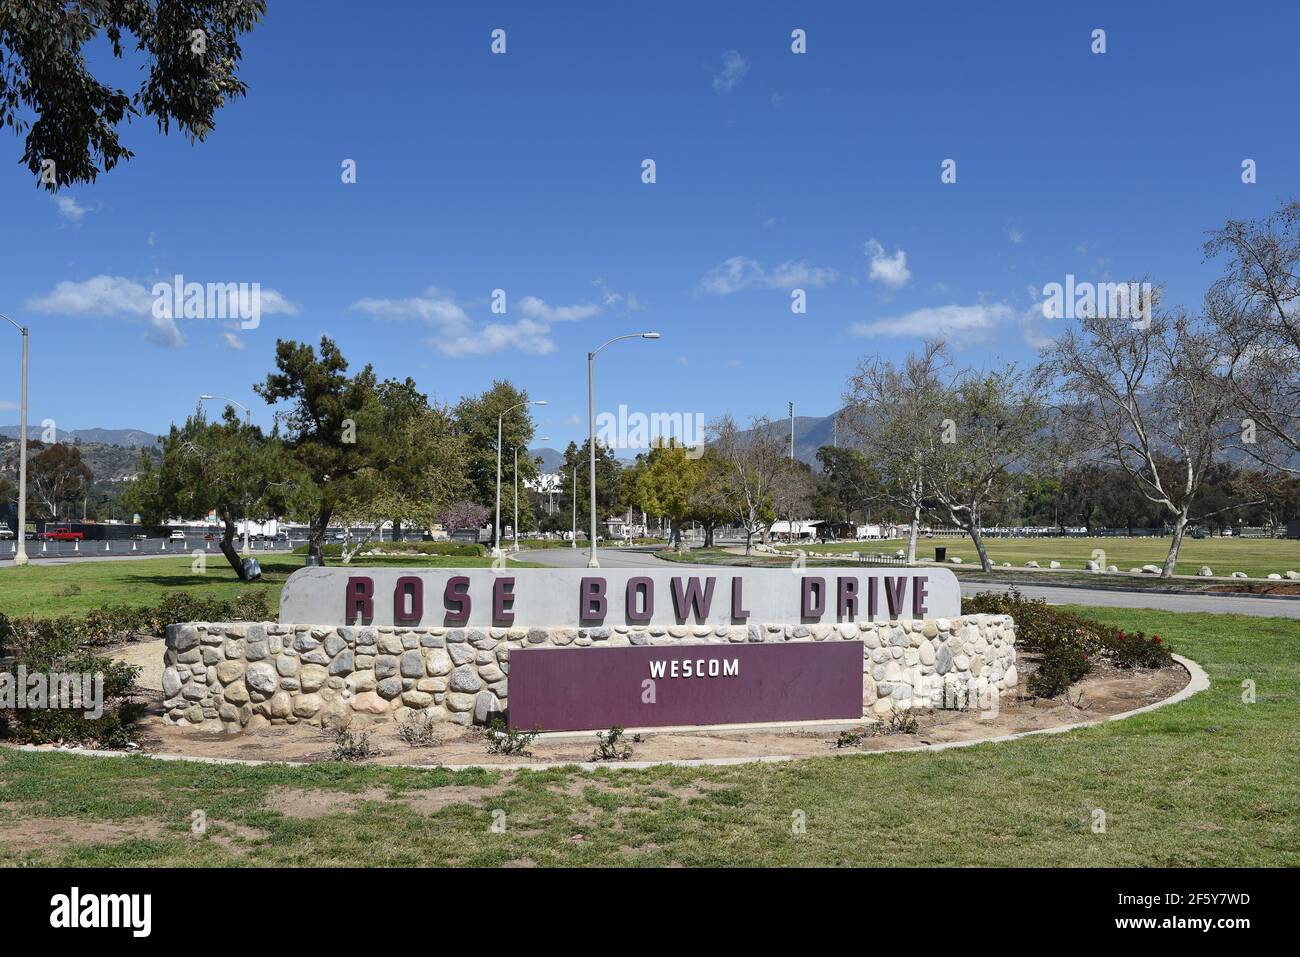 PASADENA, CALIFORNIE - 26 MARS 2021 : panneau rose Bowl Drive à l'entrée du célèbre stade de football. Banque D'Images